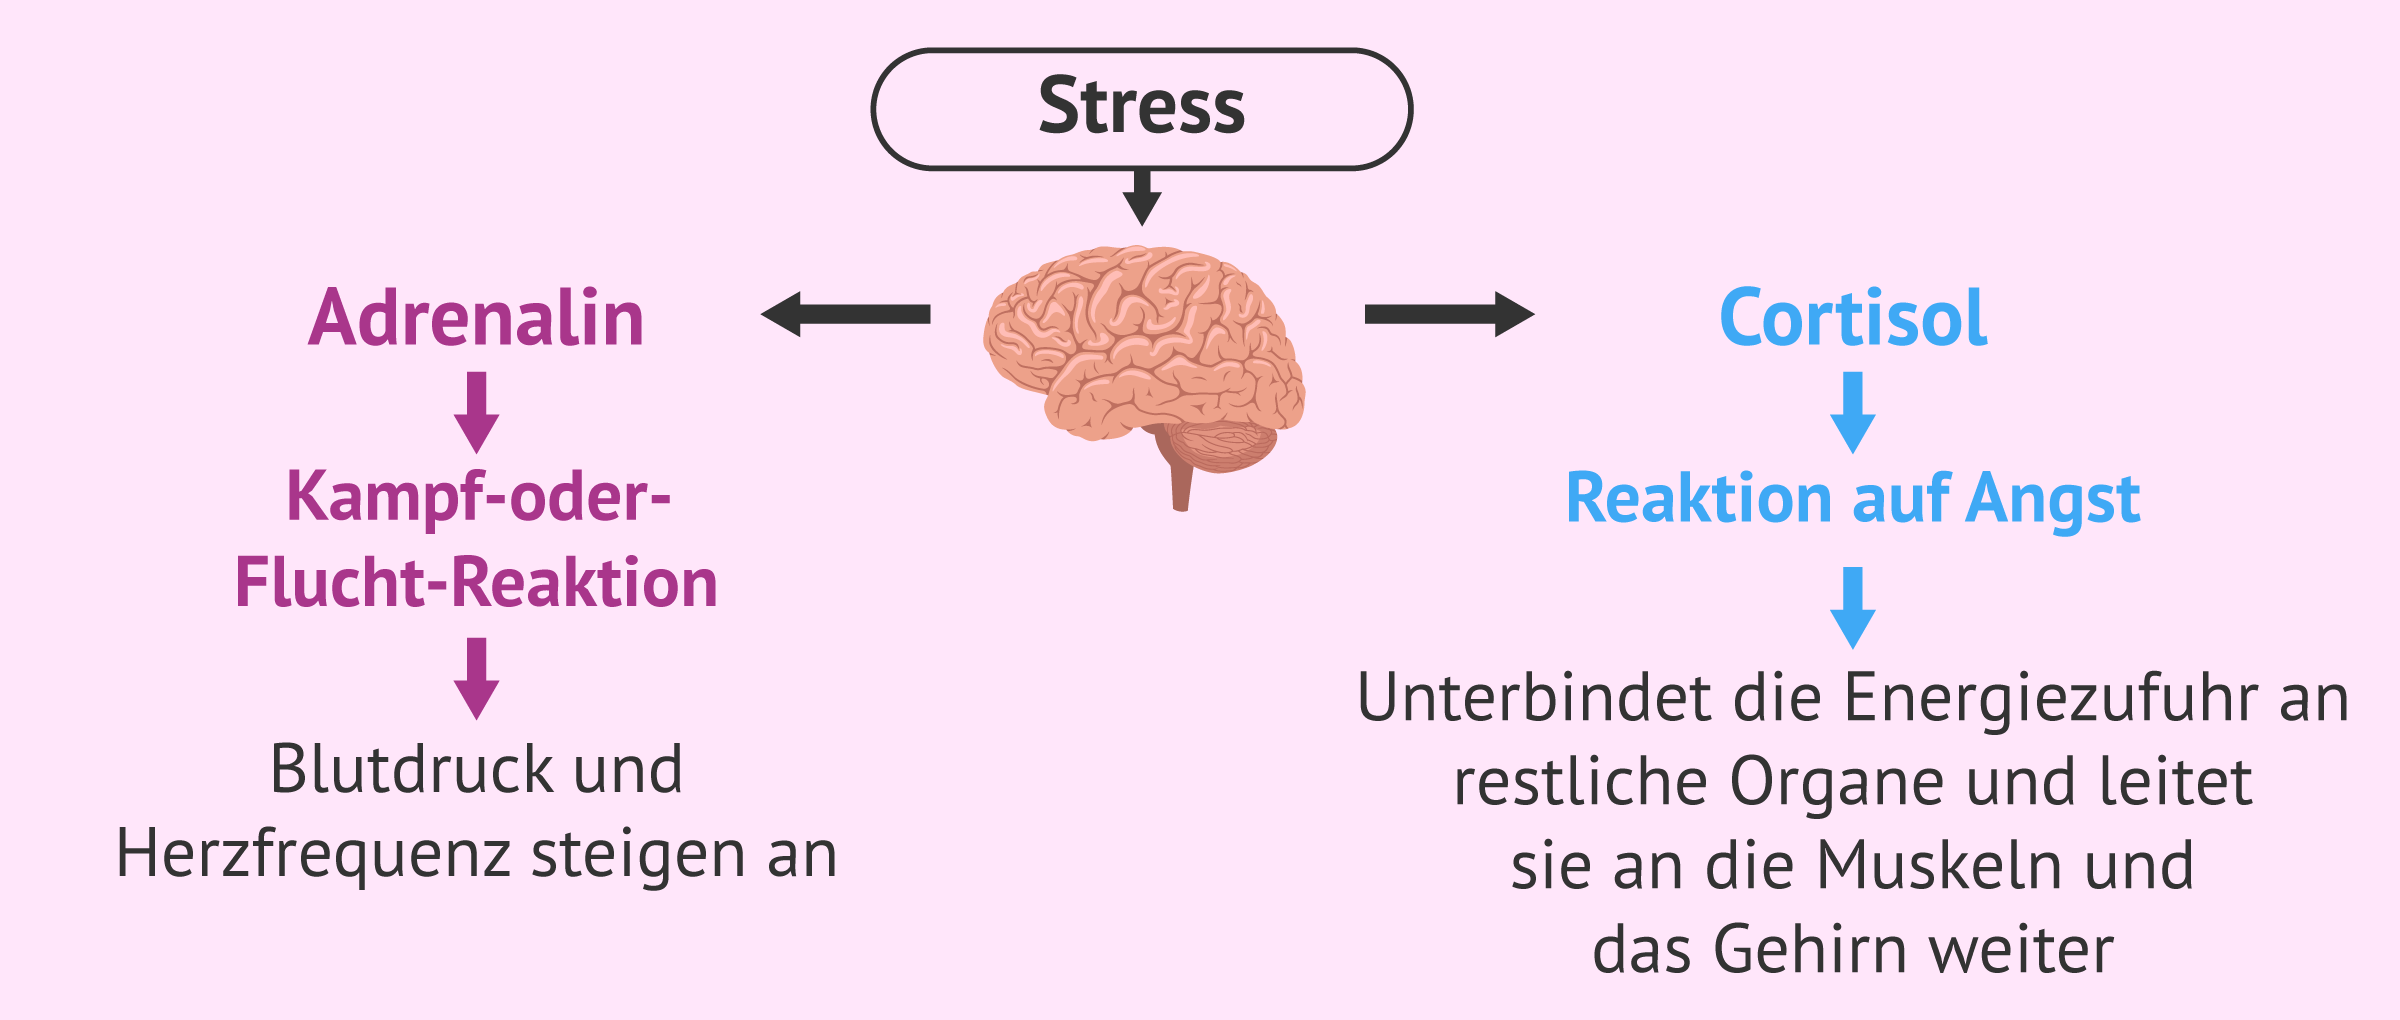 Auswirkungen von Stress auf Körper